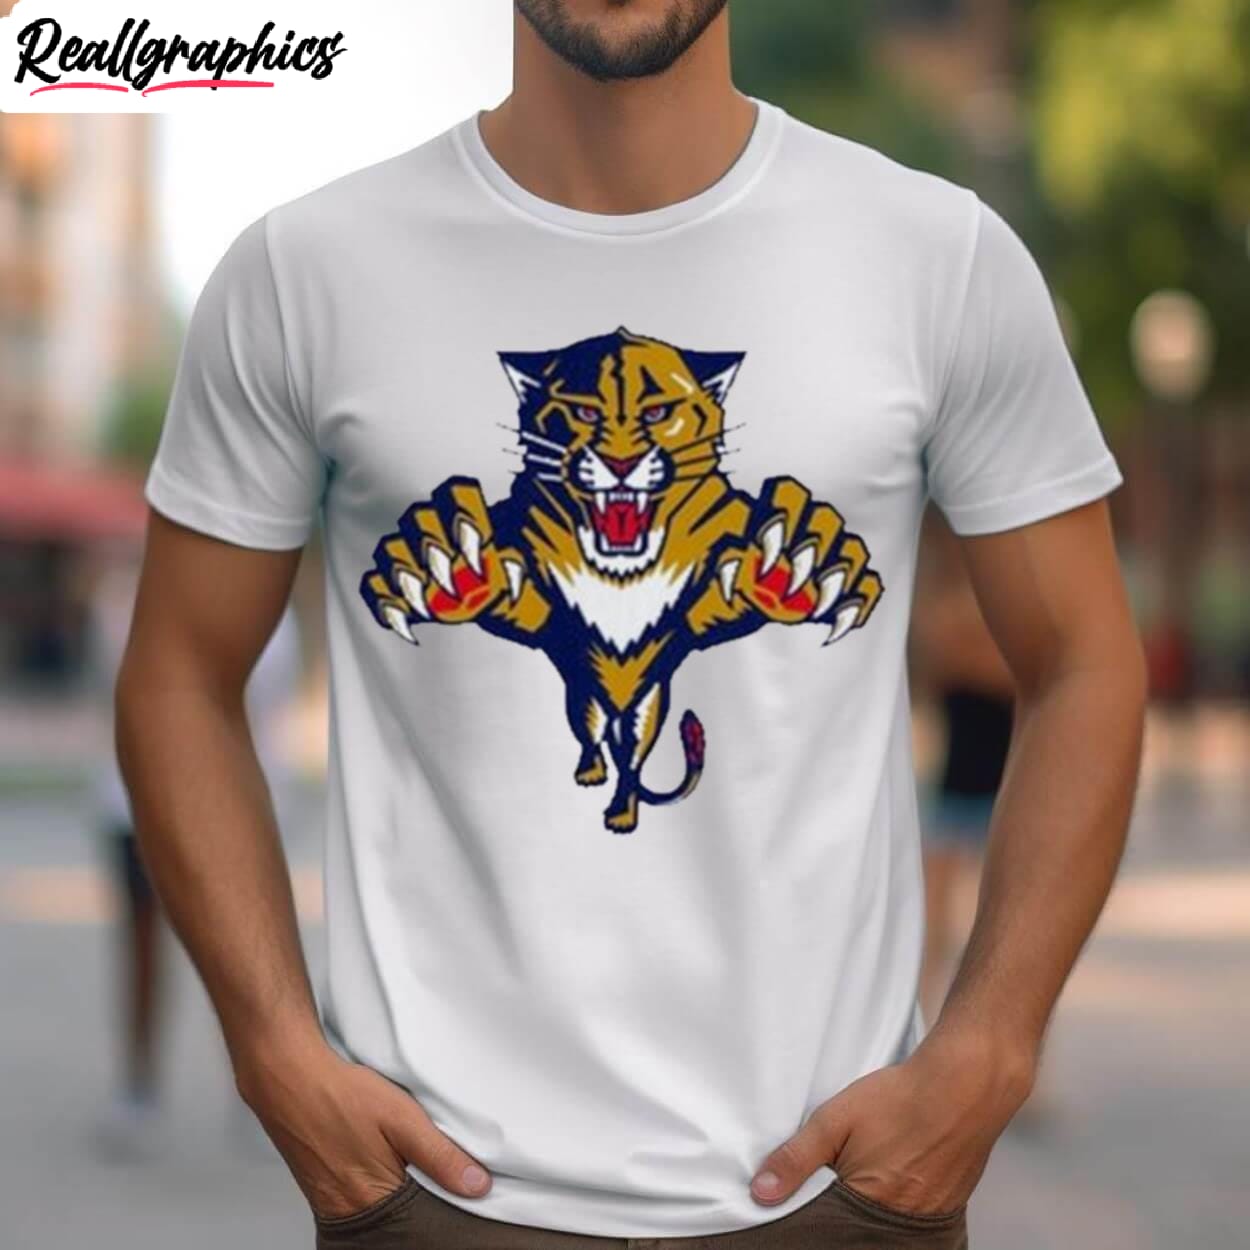 Florida Panthers XL Long Sleeve T-shirt